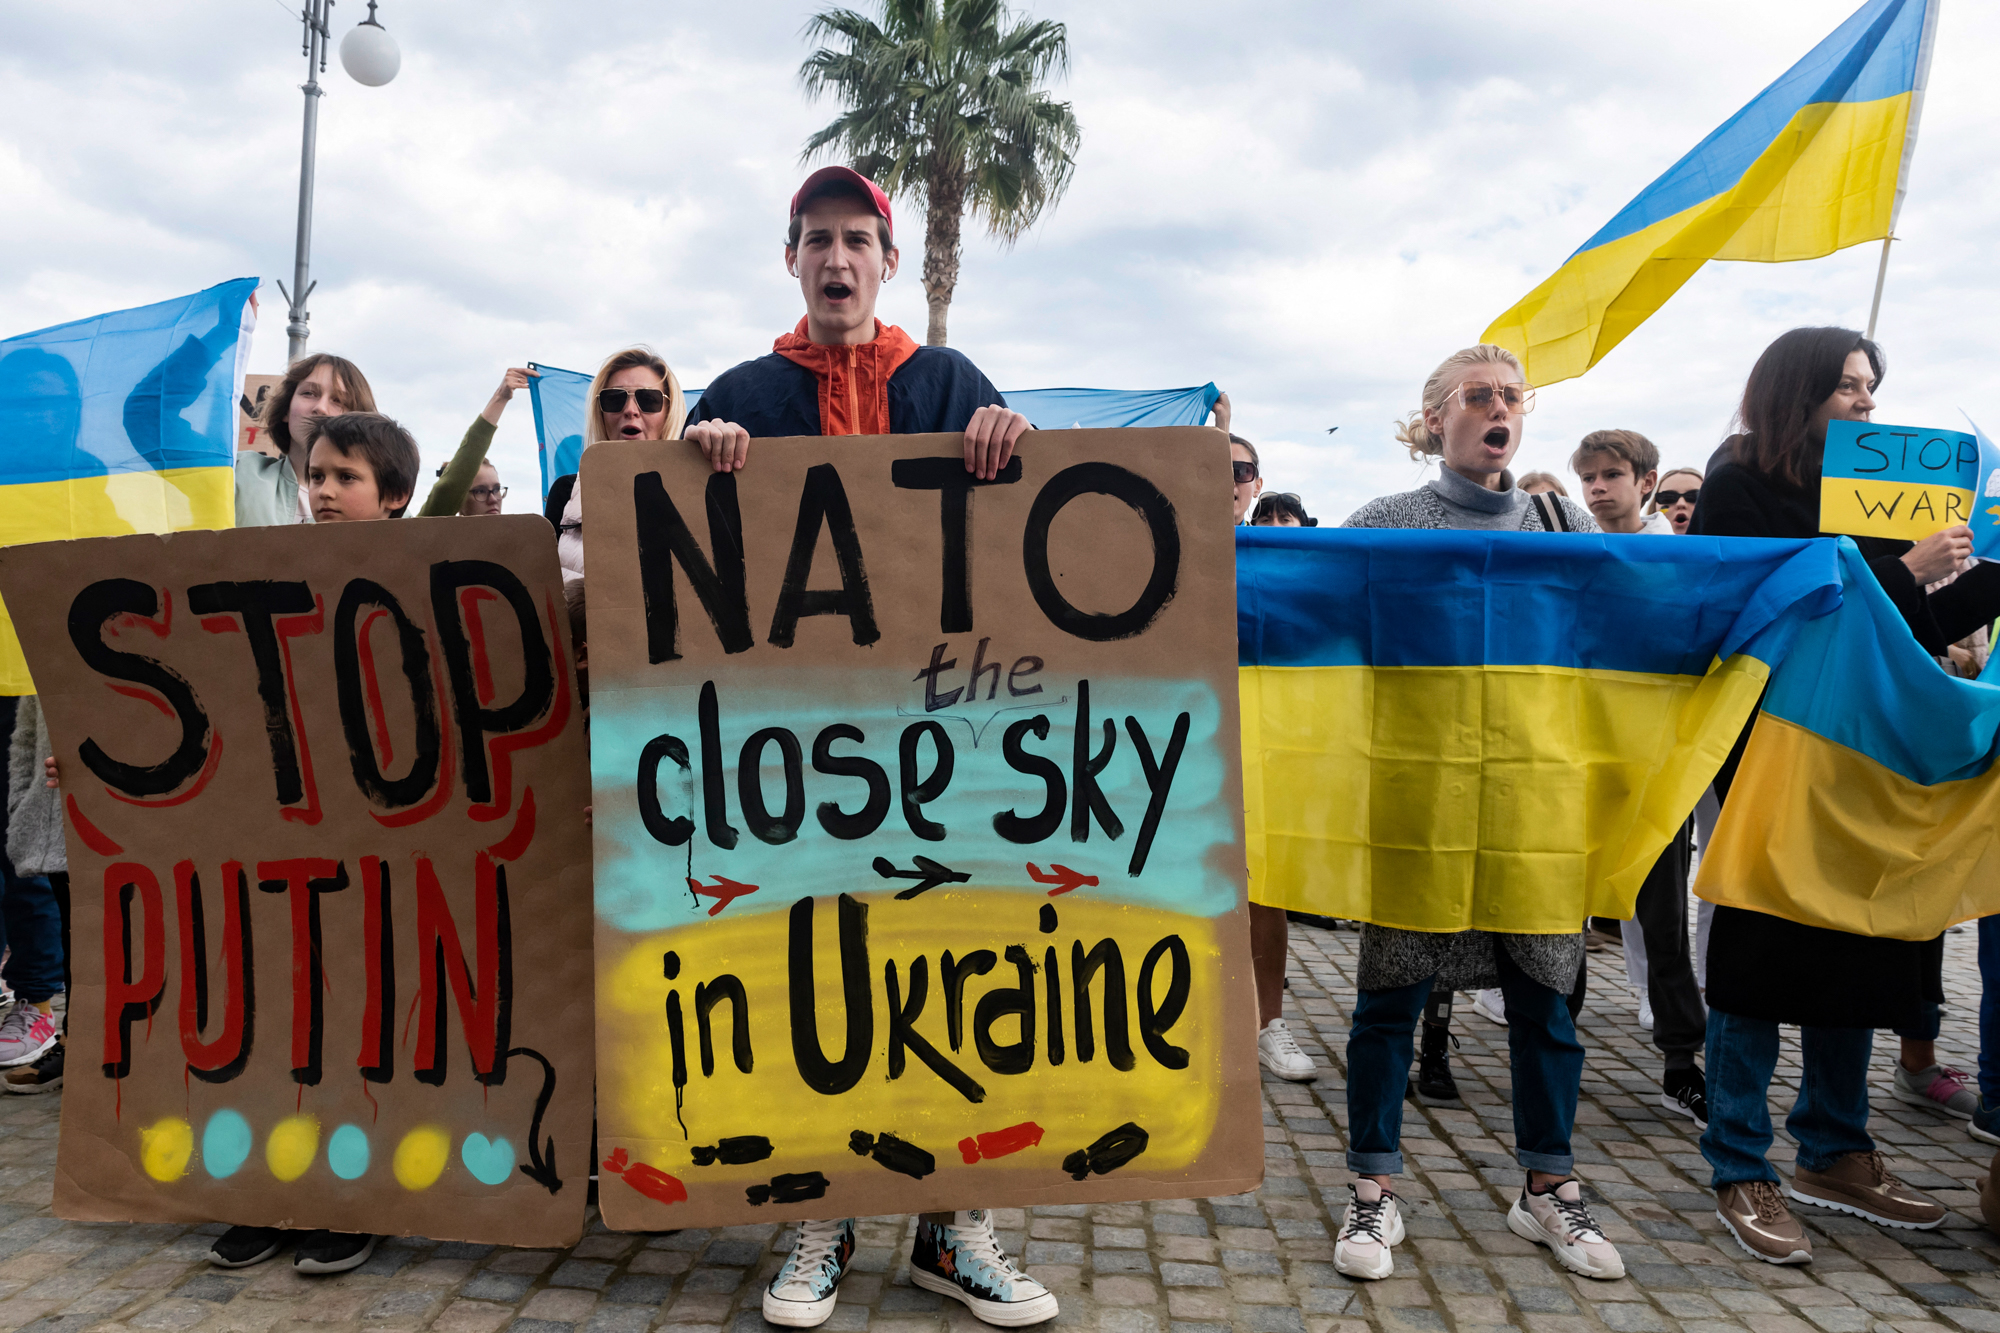 A háborúba való belépésnek tekinti Putyin, ha bármely ország no-fly zónát jelöl ki Ukrajna fölött